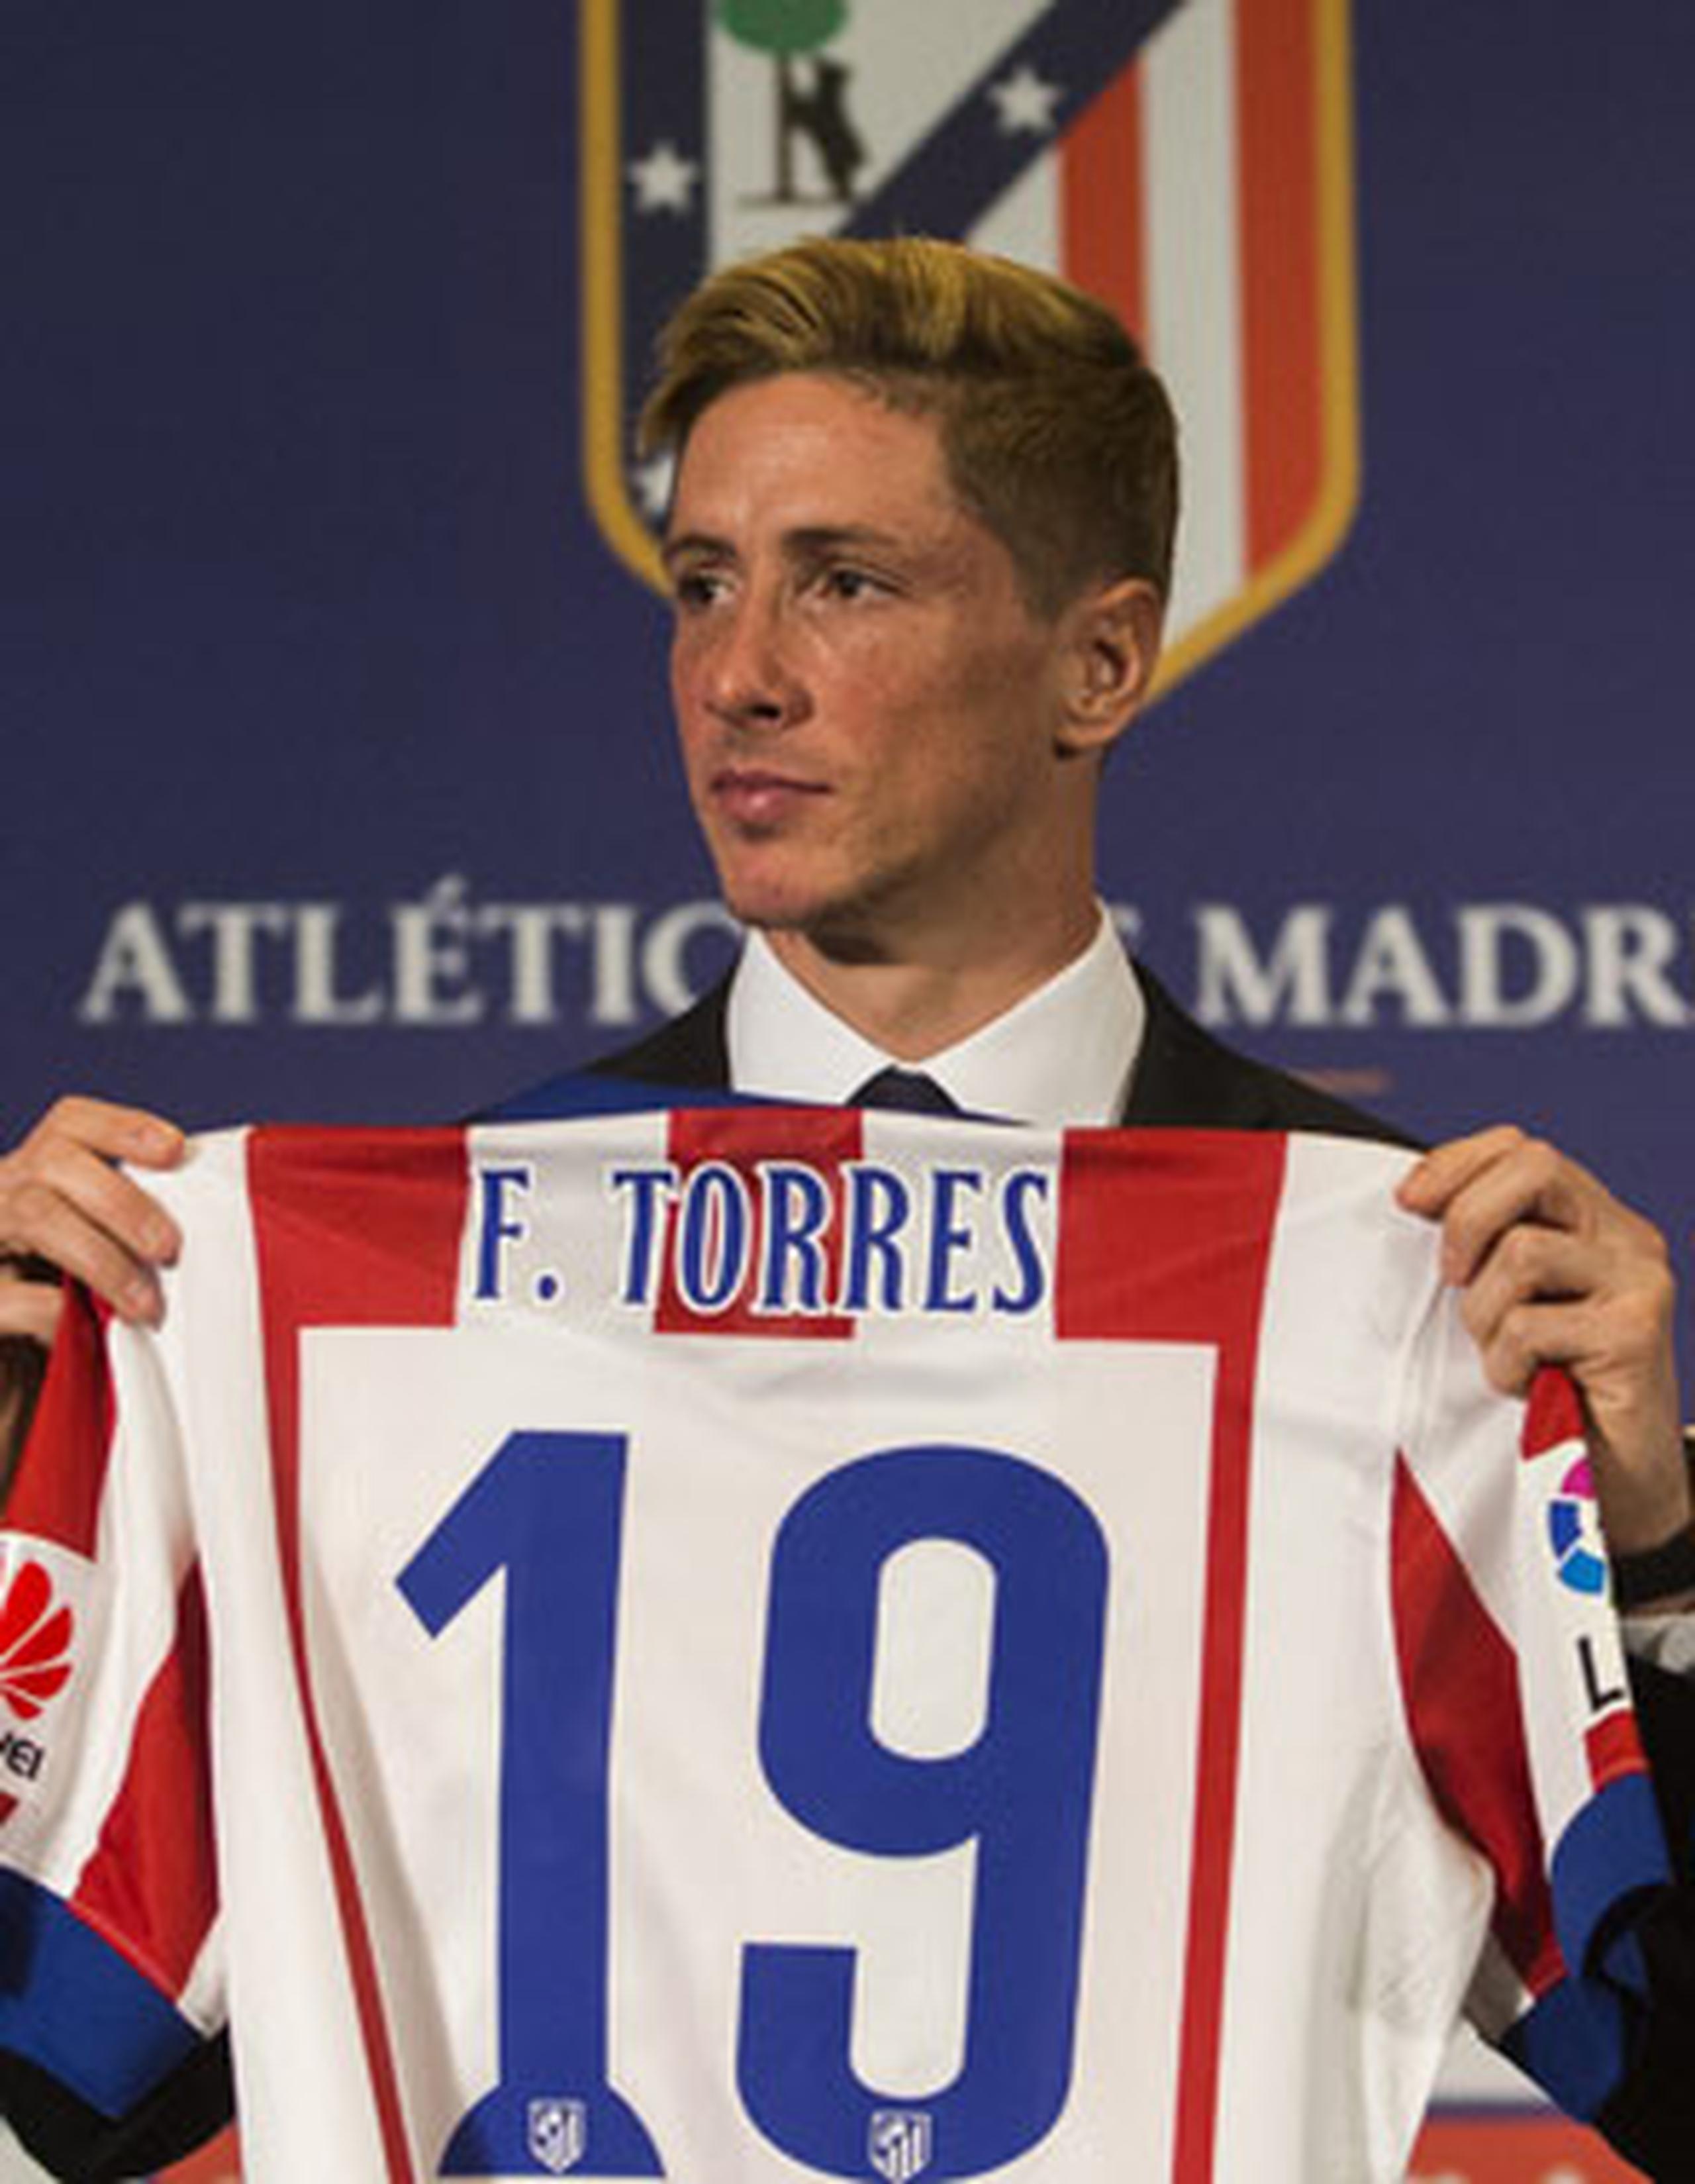 Fernando Torres debutó con el Atlético en 2001, cuando tenía 17 años y anotó 91 goles en 244 partidos con el equipo madrileño. (AP)